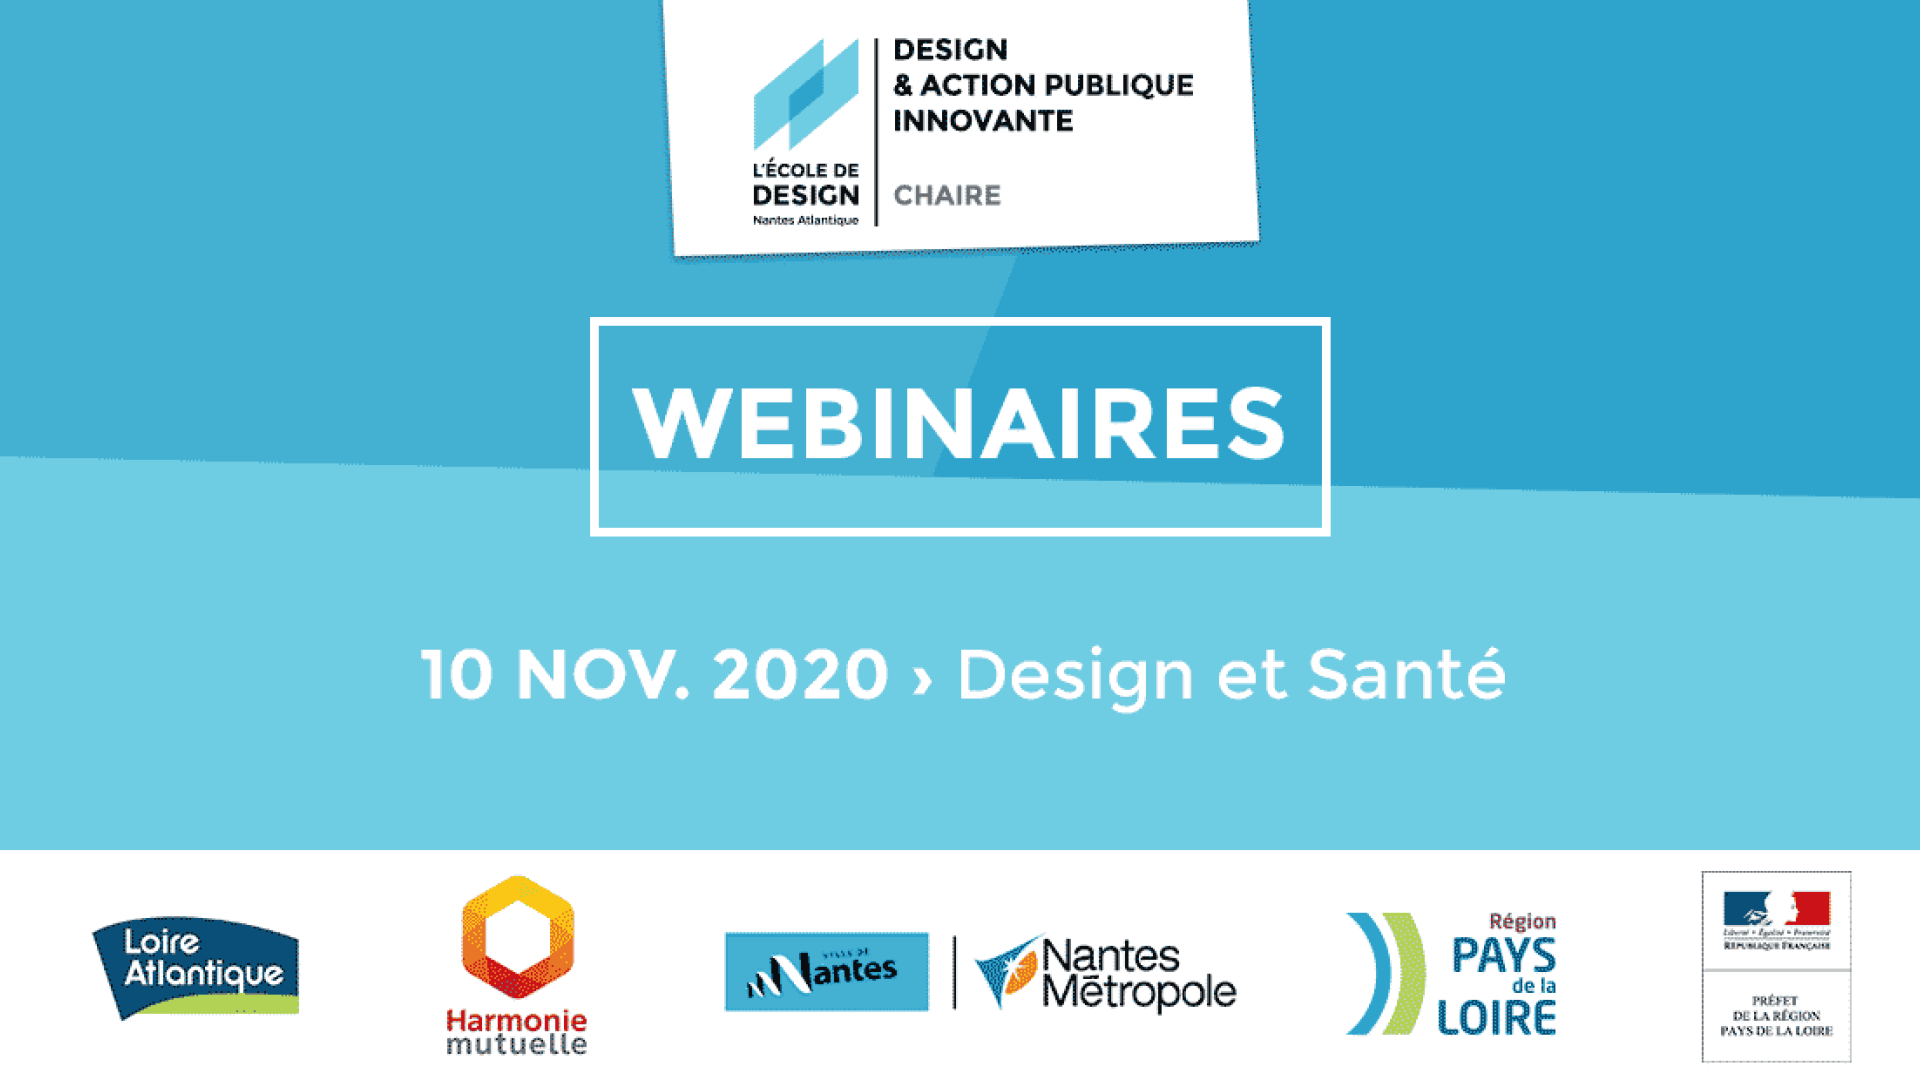 Webinaire 10 novembre Chaire Design & Action publique innovante